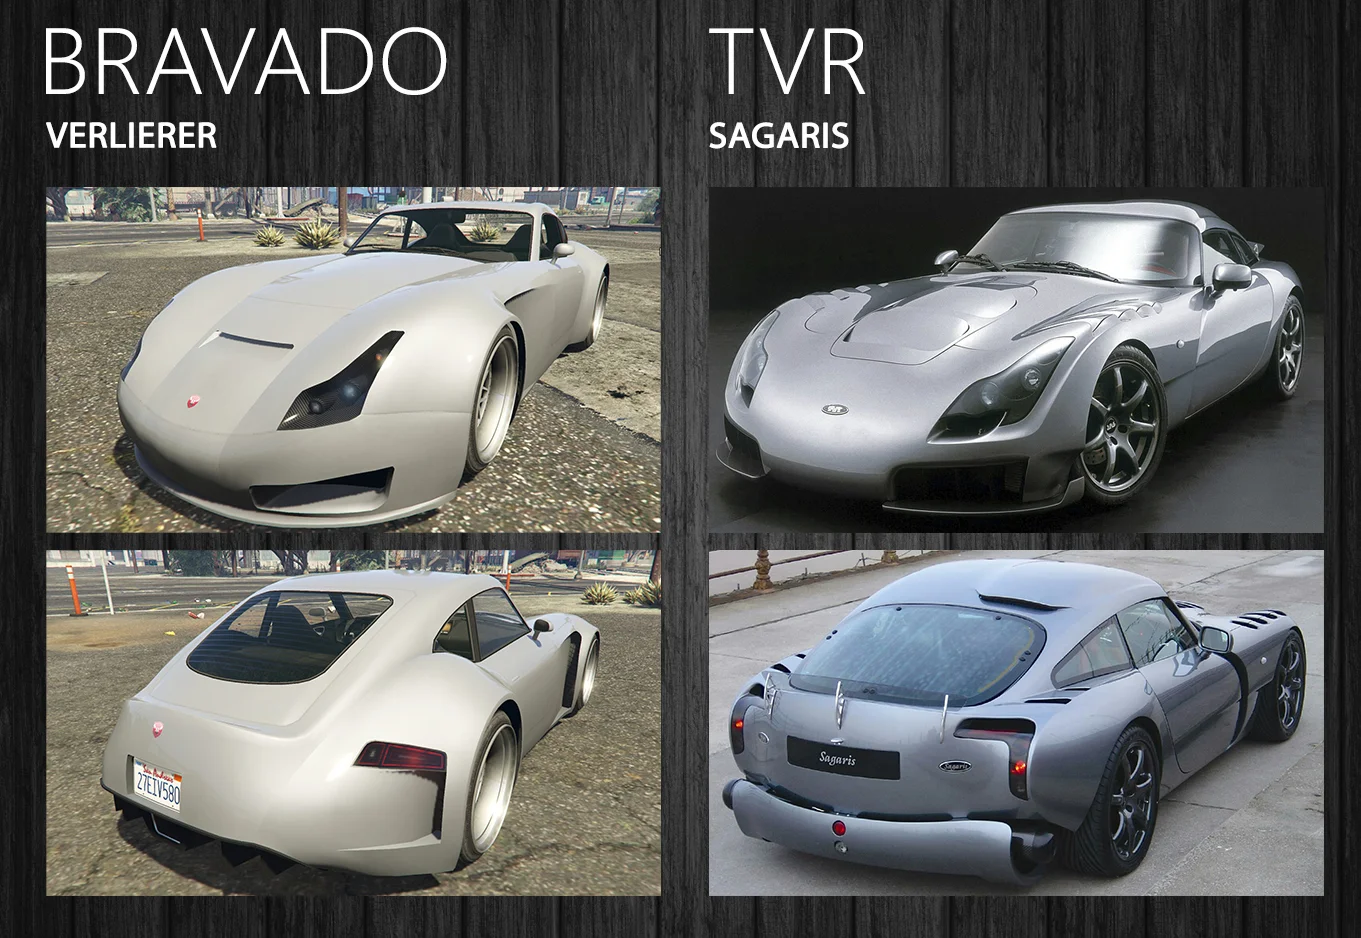 О TVR Sagaris помнят сейчас разве что самые преданные фанаты марки, а в GTA машину видят (и водят) миллионы.